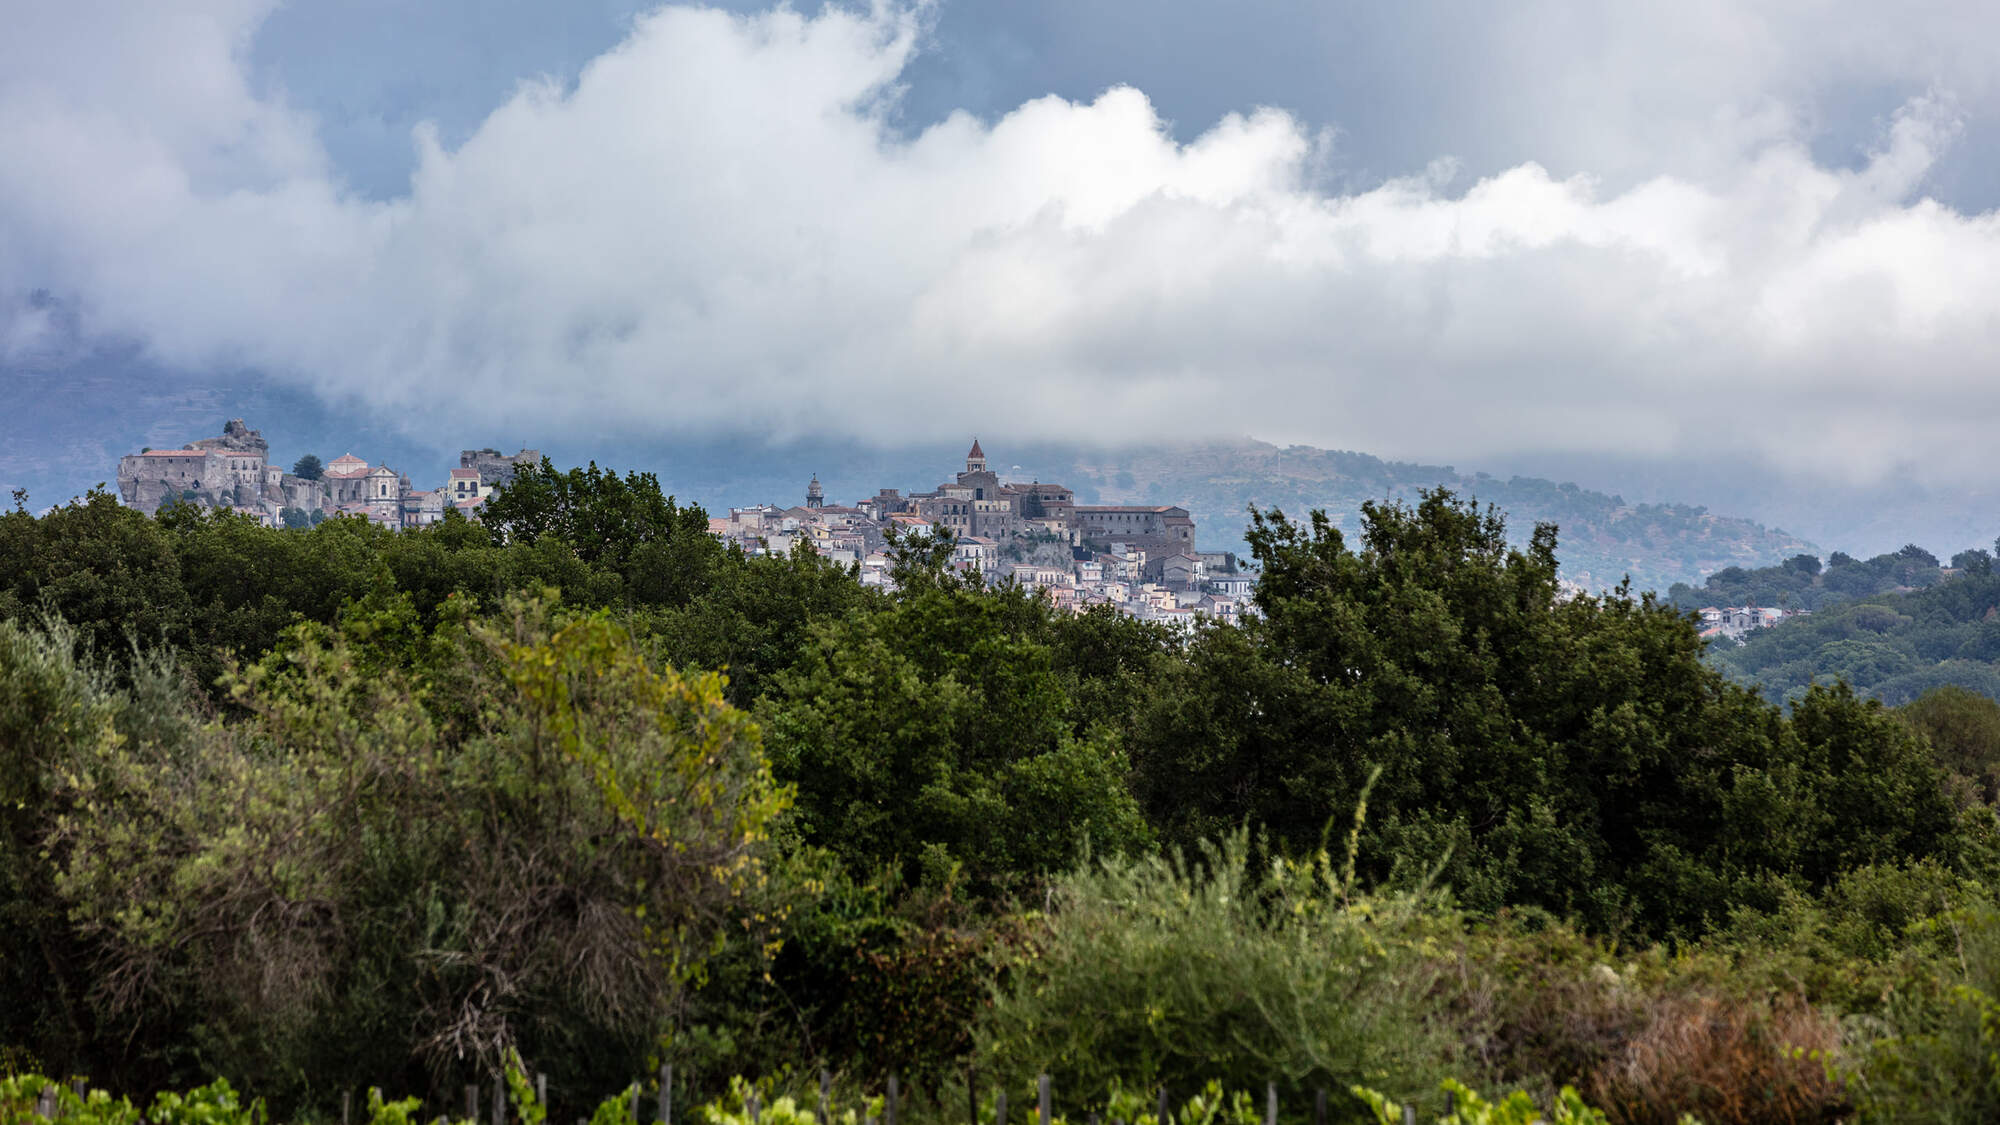 Landscape image of the town of Castiglione di Sicilia, Italy.